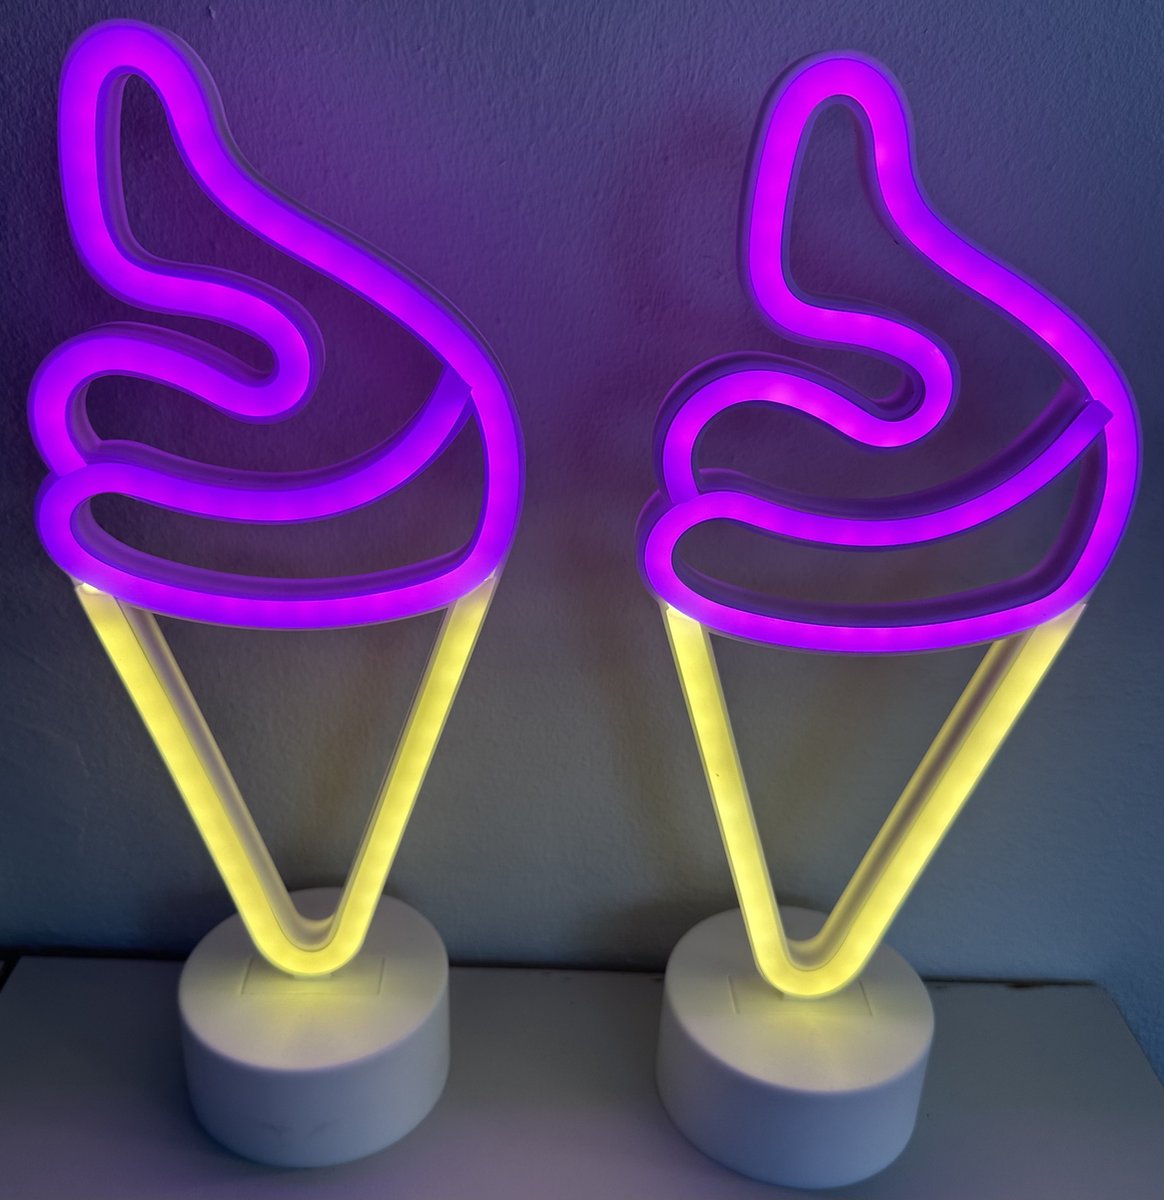 LED ijsje met neonlicht - Set van 2 stuks - roze/geel neon licht - hoogte 30 x 13 x 8.5 cm - Werkt op batterijen en USB - Tafellamp - Nachtlamp - Decoratieve verlichting - Woonaccessoires